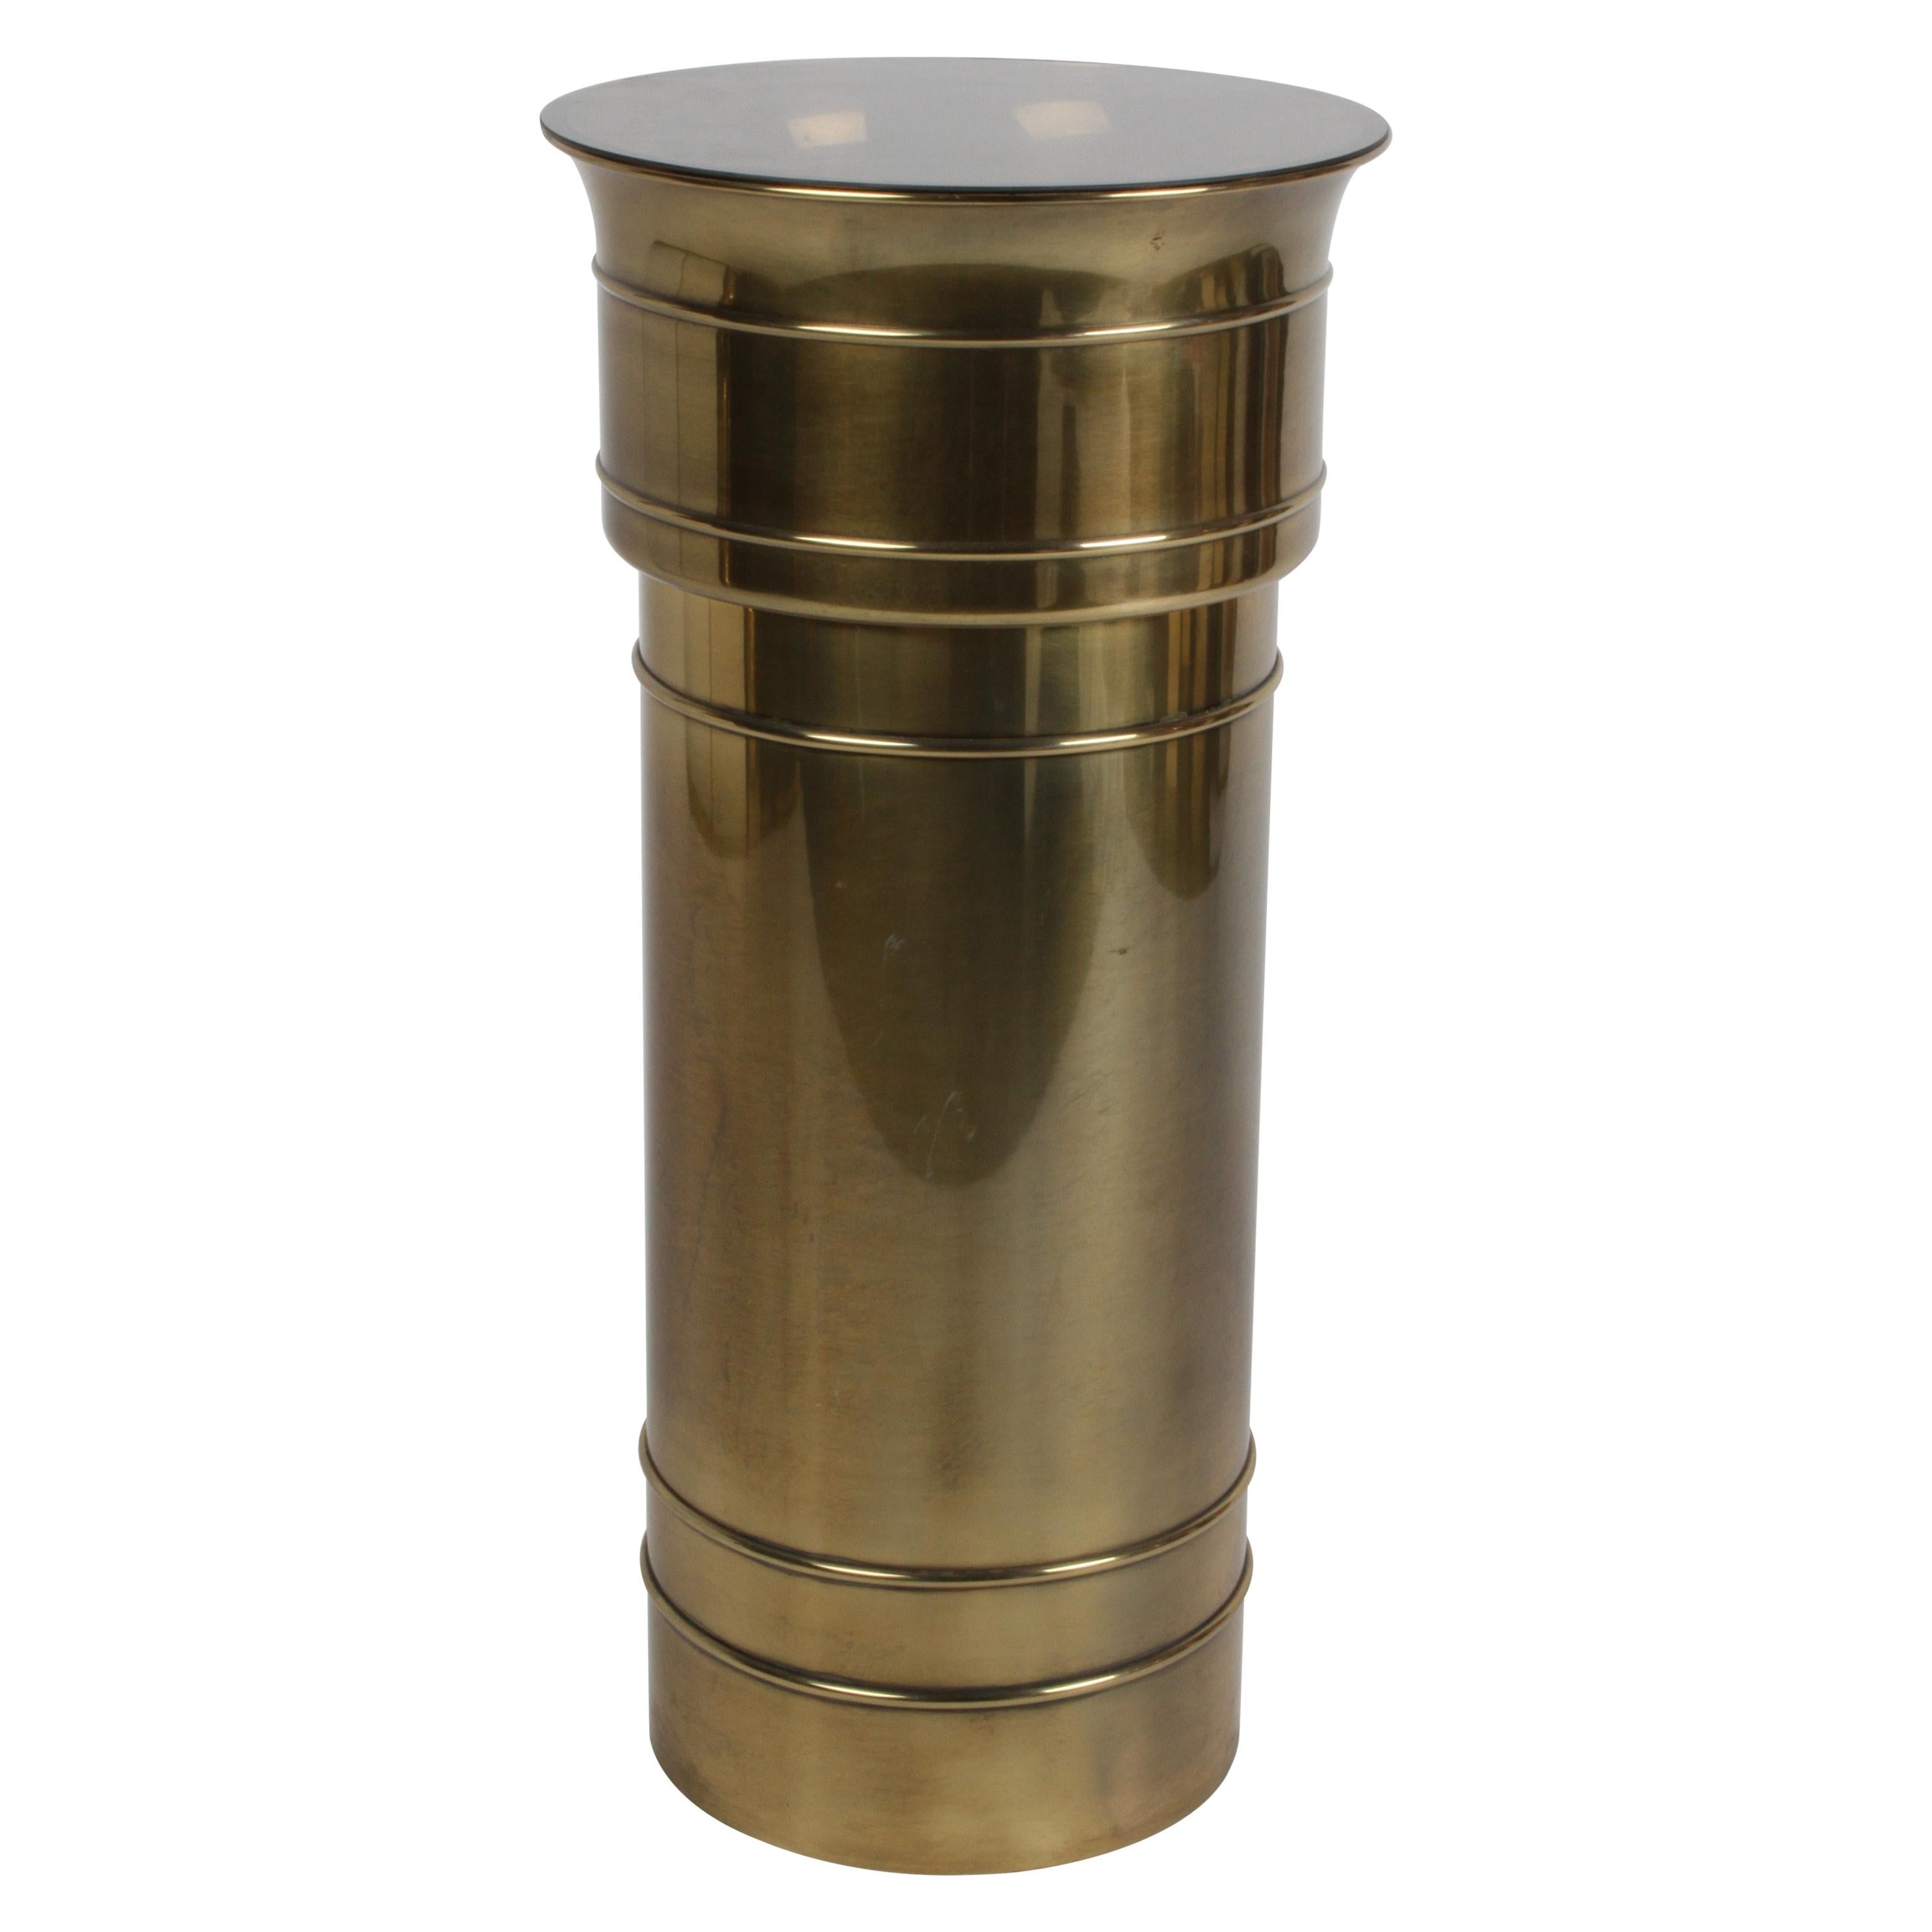 Mastercraft Hollywood Regency Round Cylinder Brass Display Pedestal or Planter For Sale